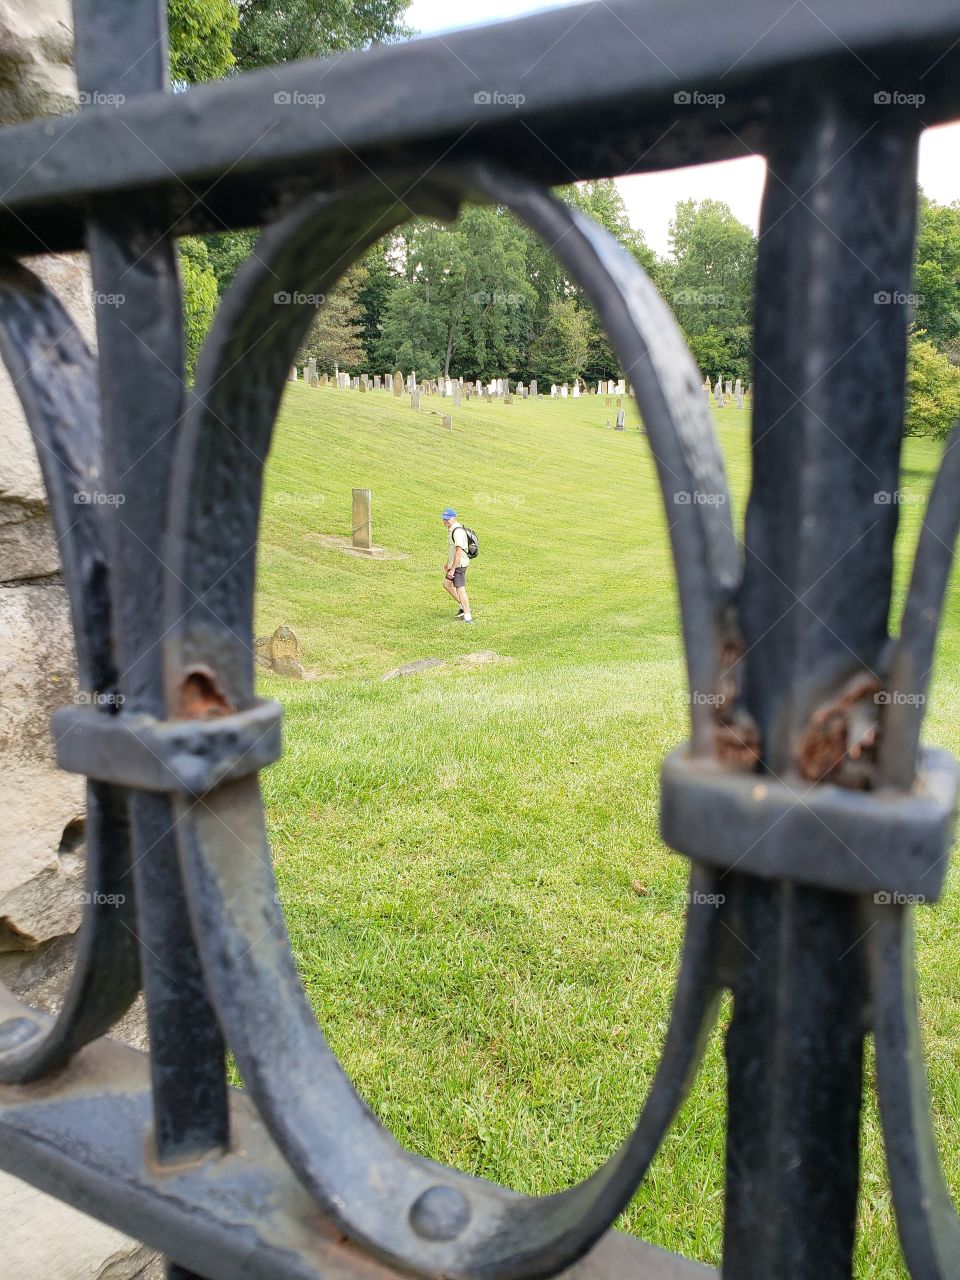 Framed cemetery visitor